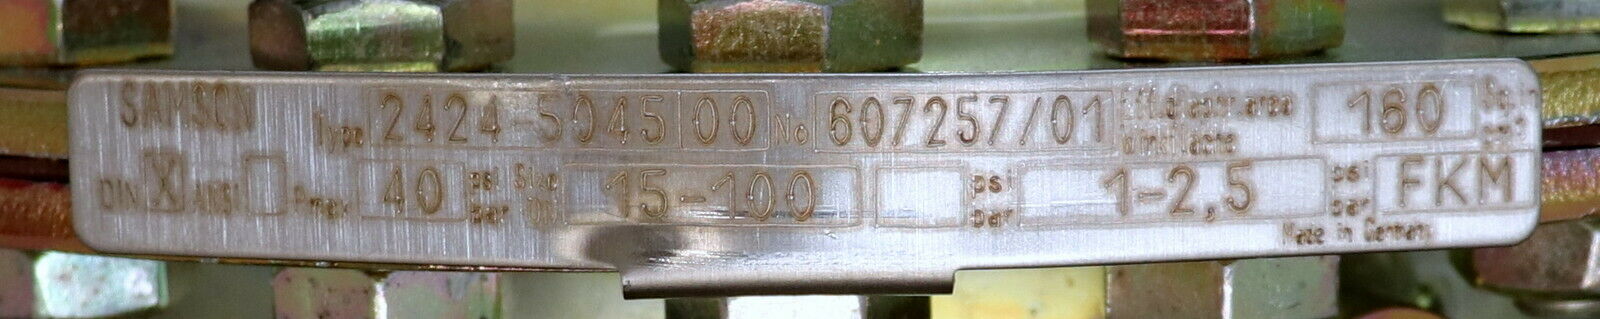 SAMSON Differenzdruckregler Type 2424 - 50045 00 160cm² Pmax=40bar